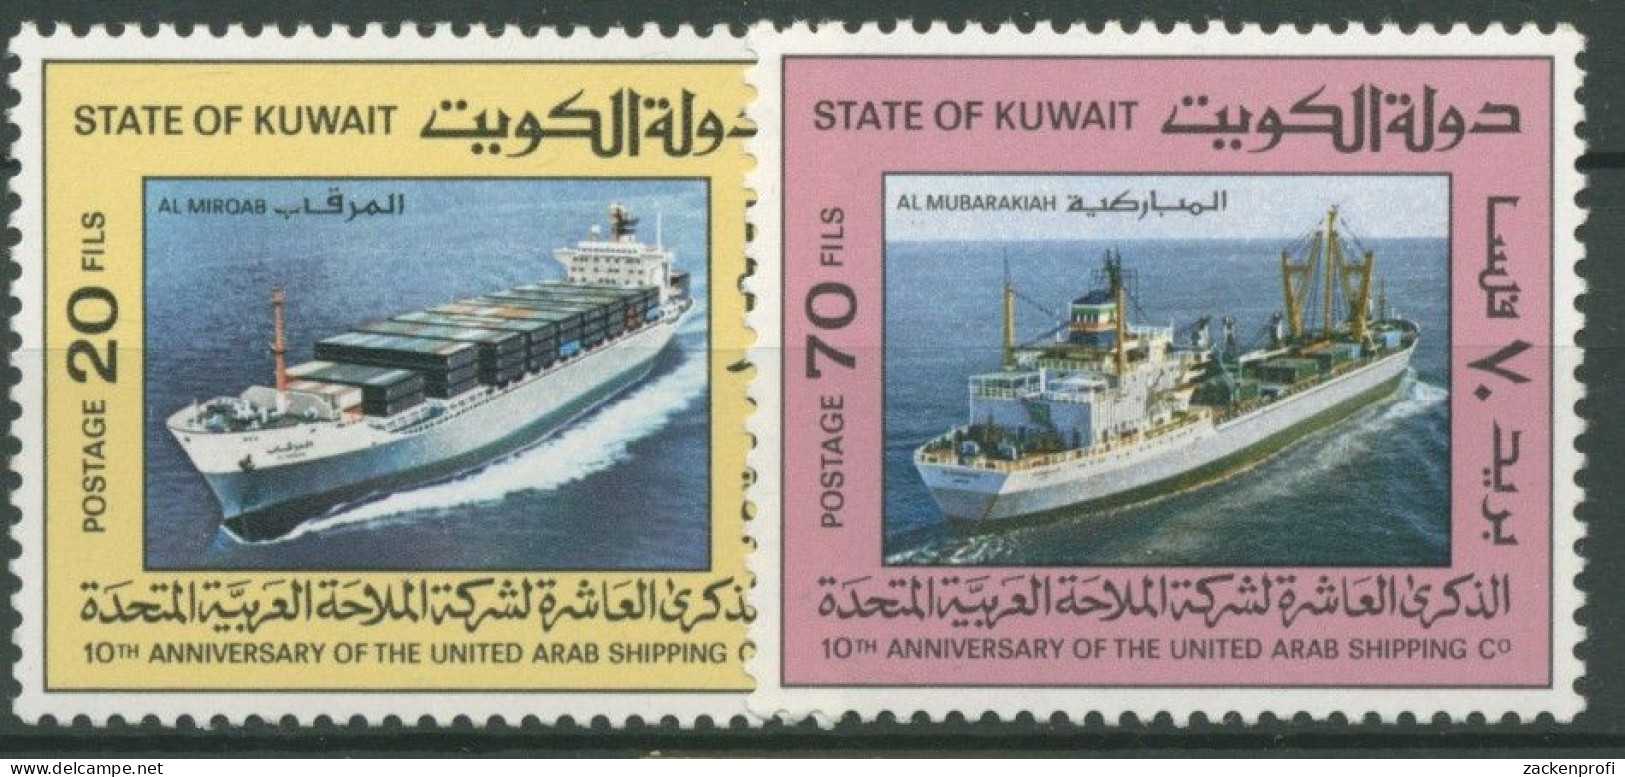 Kuwait 1986 10 Jahre Ver. Arabische Schiffahrtsgesellschaft 1108/09 Postfrisch - Kuwait